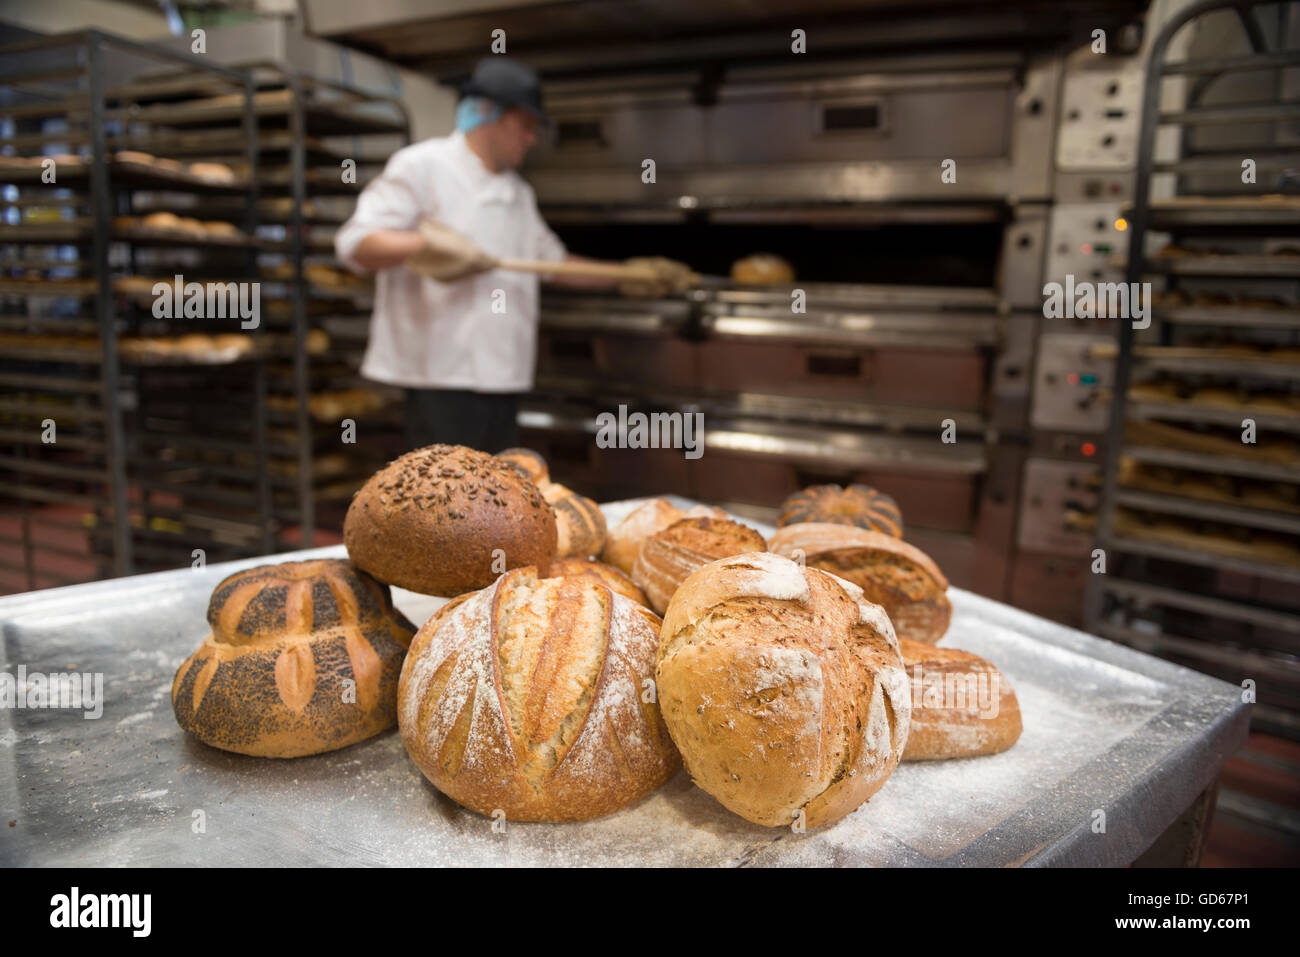 https://c8.alamy.com/comp/GD67P1/baker-baking-bread-england-uk-GD67P1.jpg